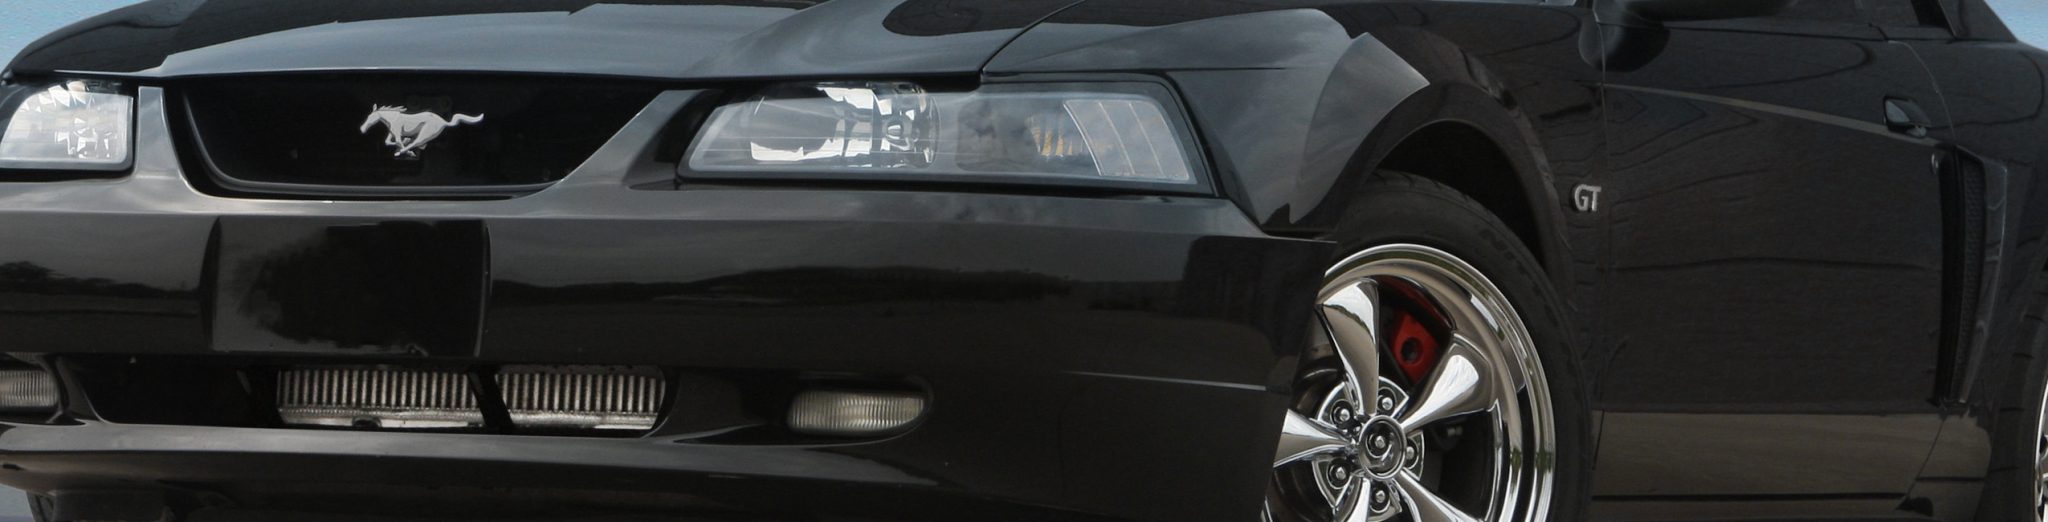 1999 - 04 Mustang GT & 2001 Bullit (4.6 2V)